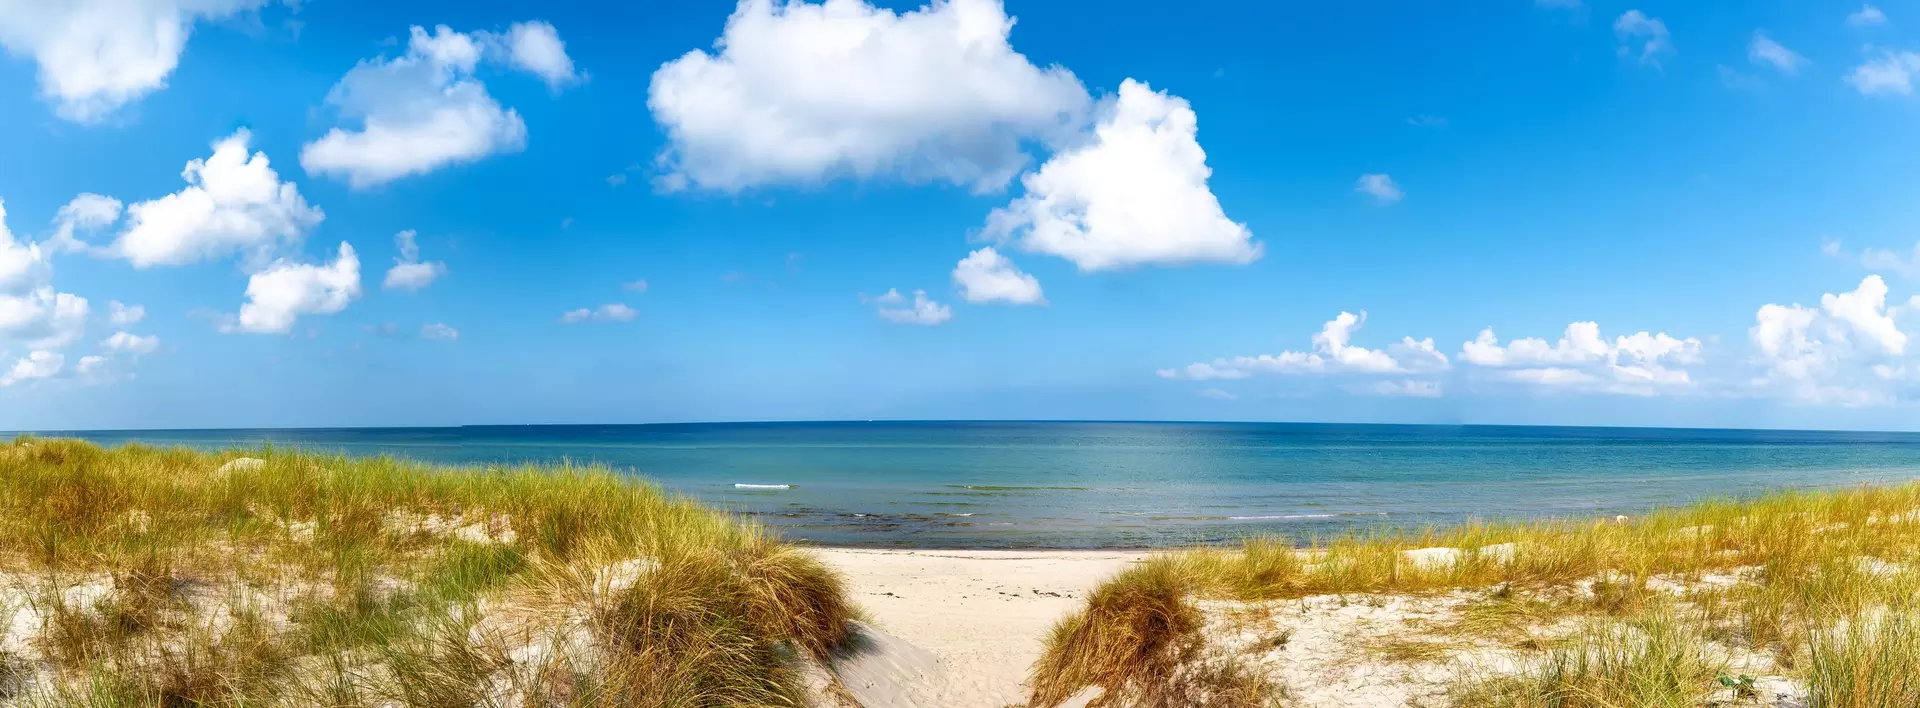 Blick zwischen Strandhafer auf den Strand und die Ostsee